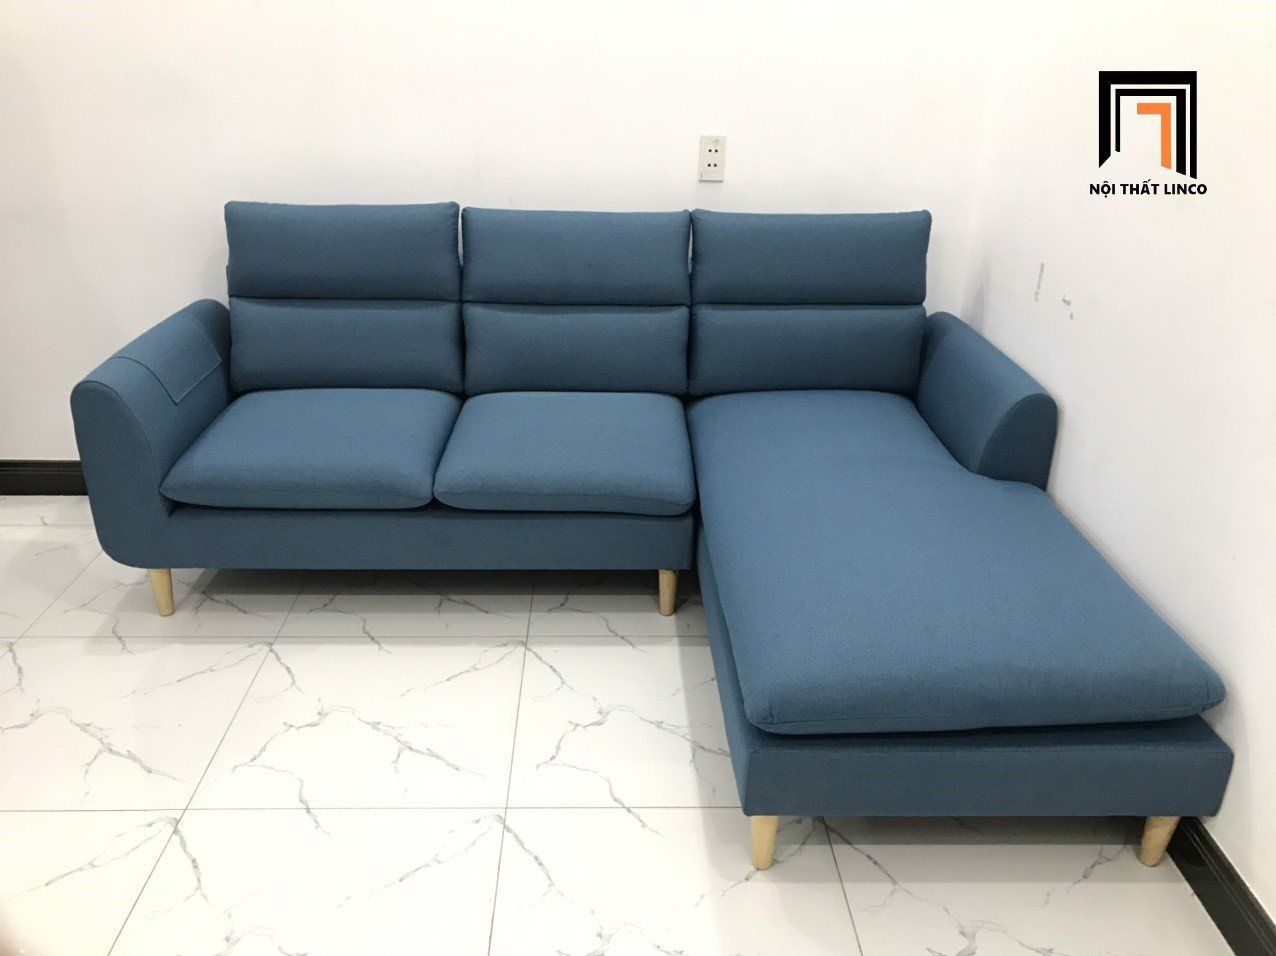  Bộ ghế sofa góc L 2m2 x 1m6 cho phòng khách màu xanh dương 